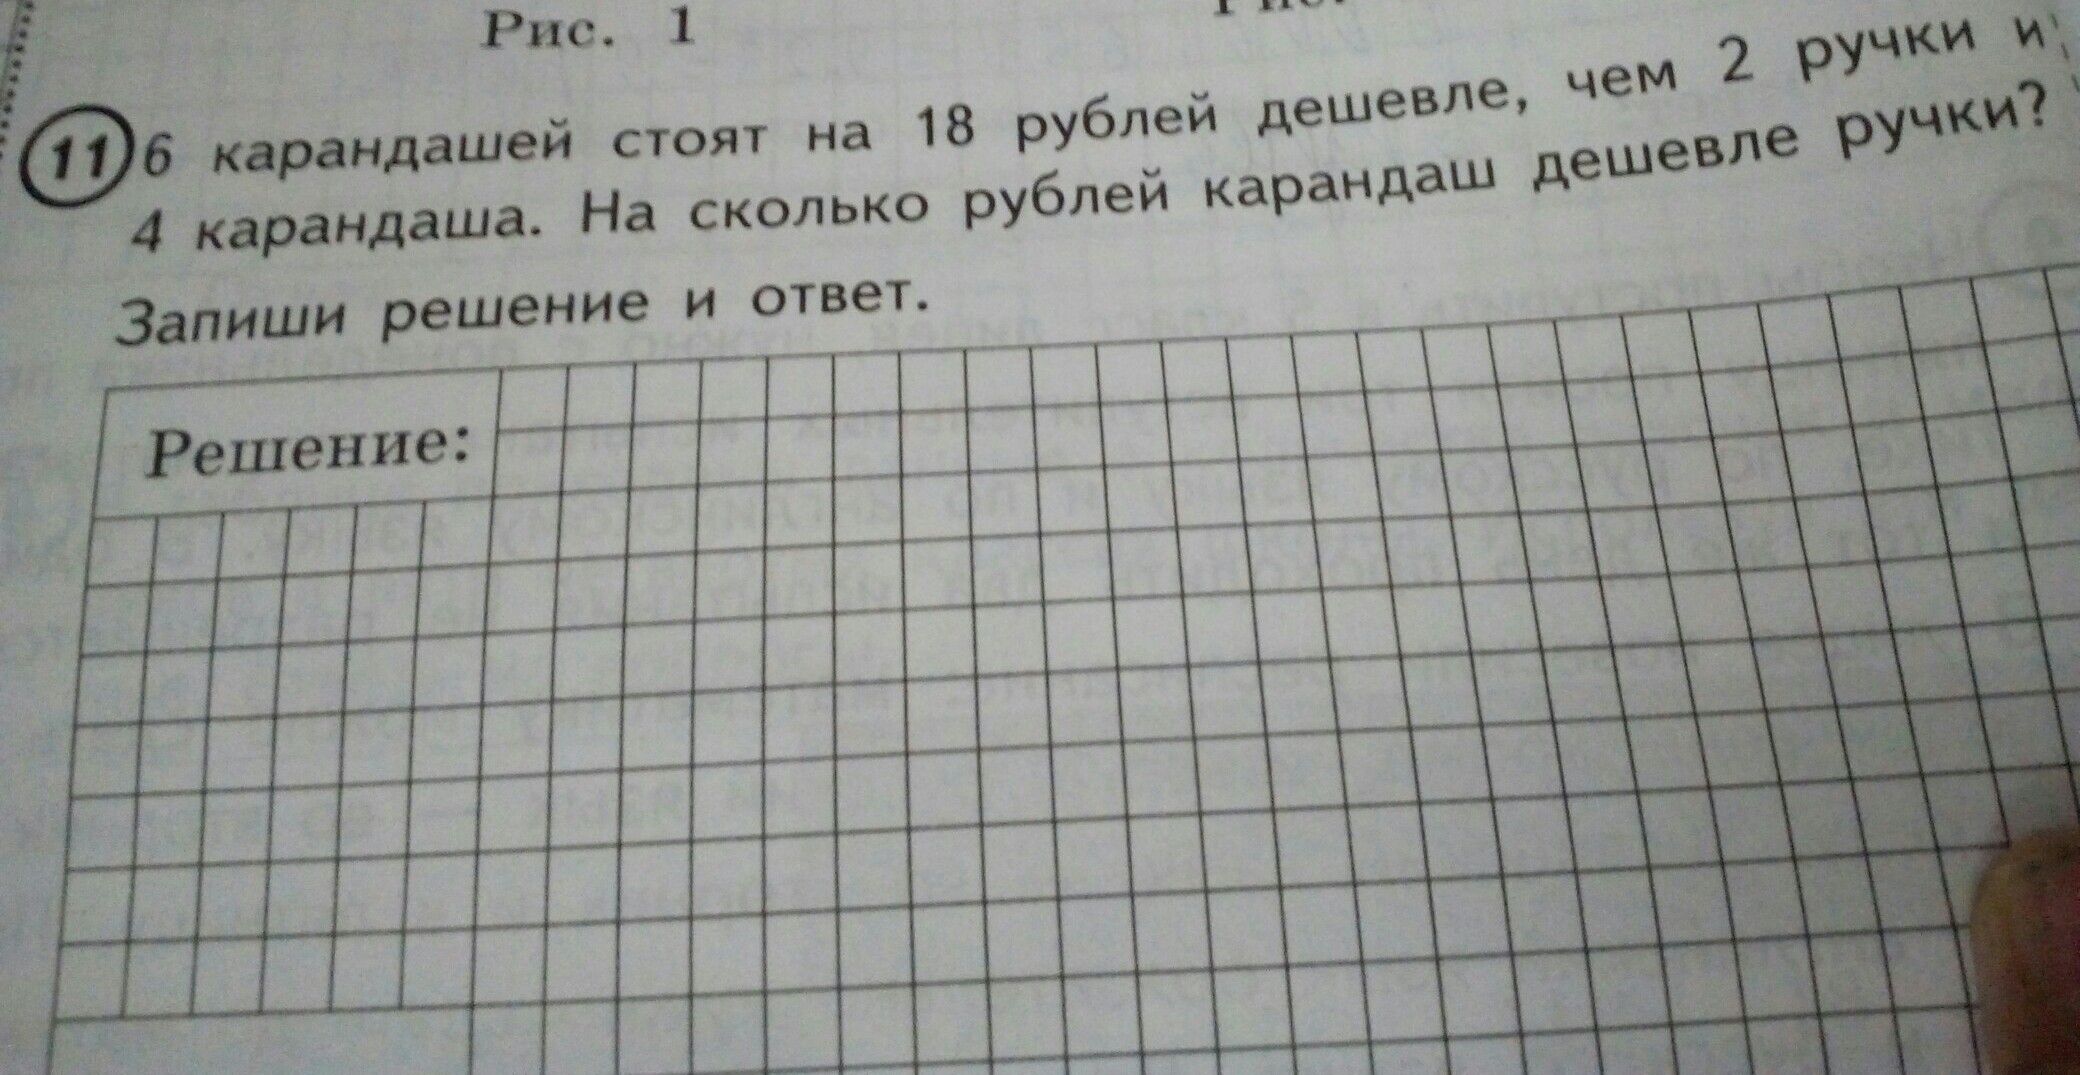 5 карандашей на 16 рублей дешевле. 6 Карандашей стоят. 5 Карандашей стоят. 5 Карандашей стоят на 16. Карандаш дешевле ручки на 2 рубля.